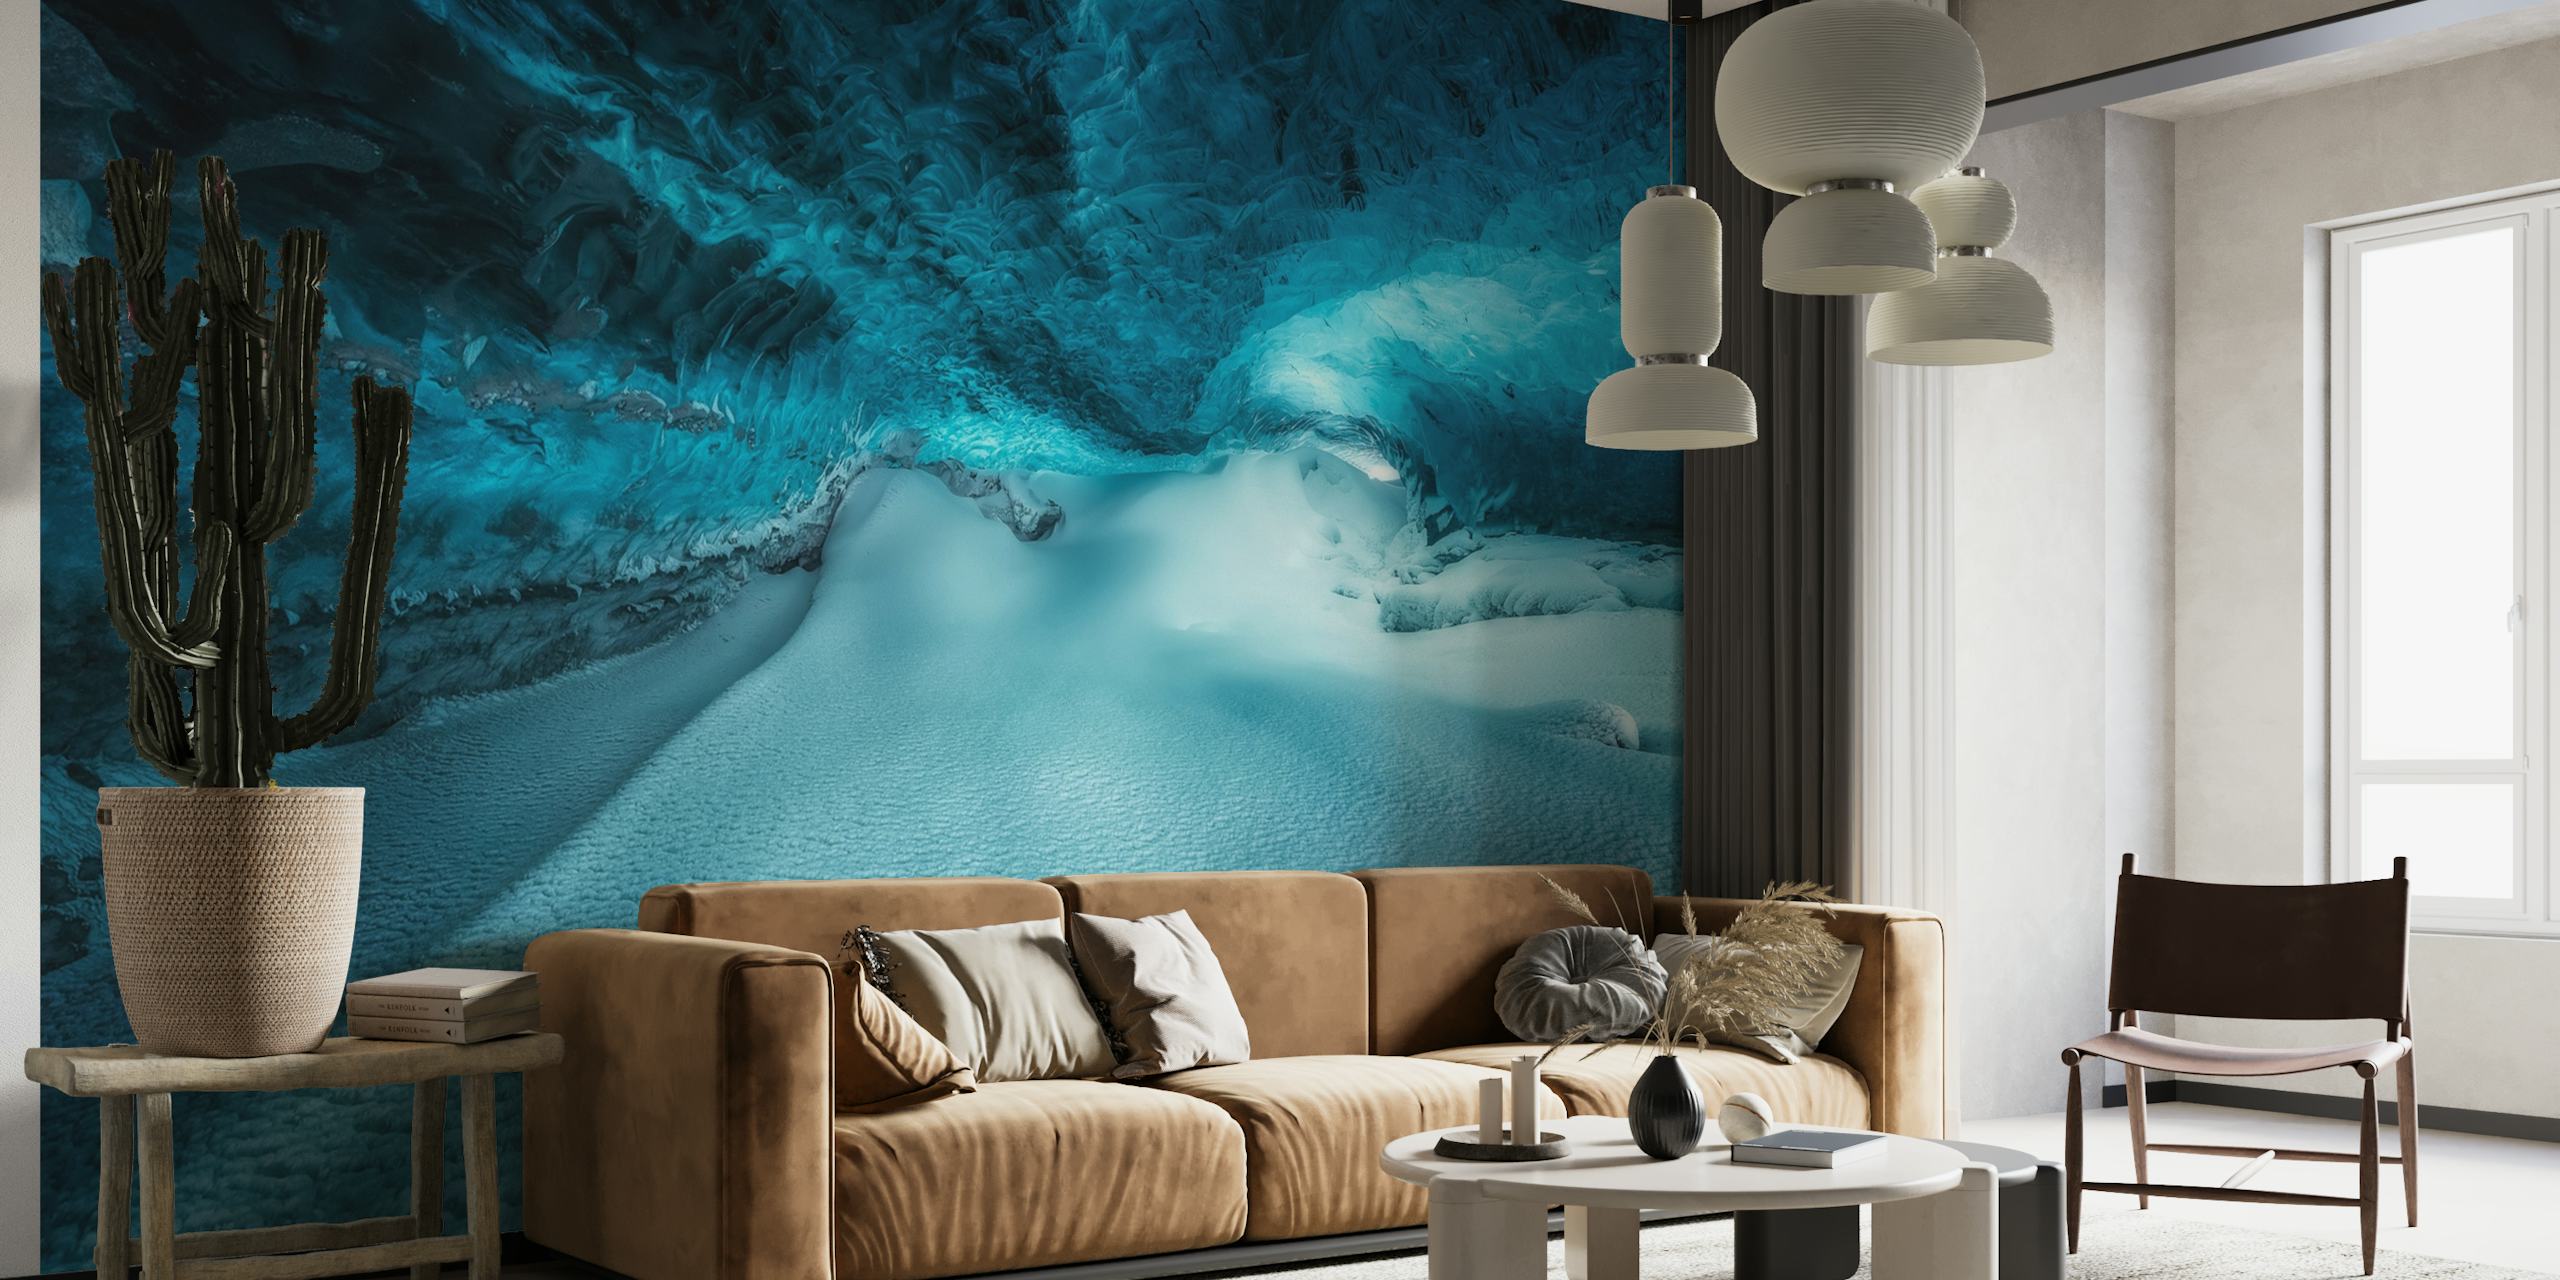 Murale murale d'une caverne de glace sous-marine affichant des nuances de bleu et des textures gelées